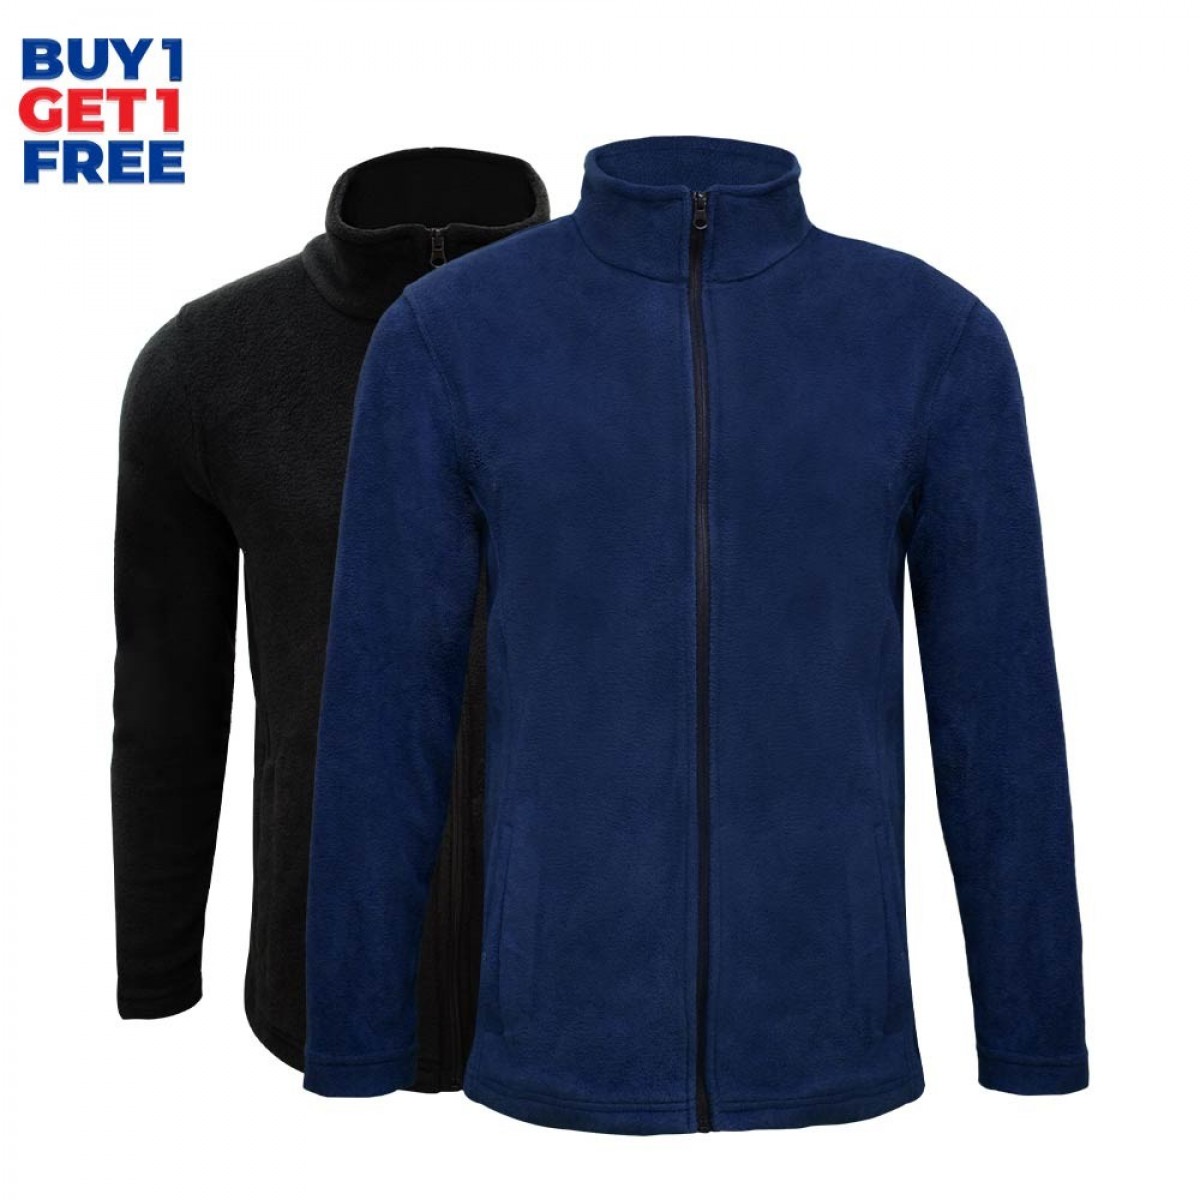 men-fleece-jacket-kfj05772-5a